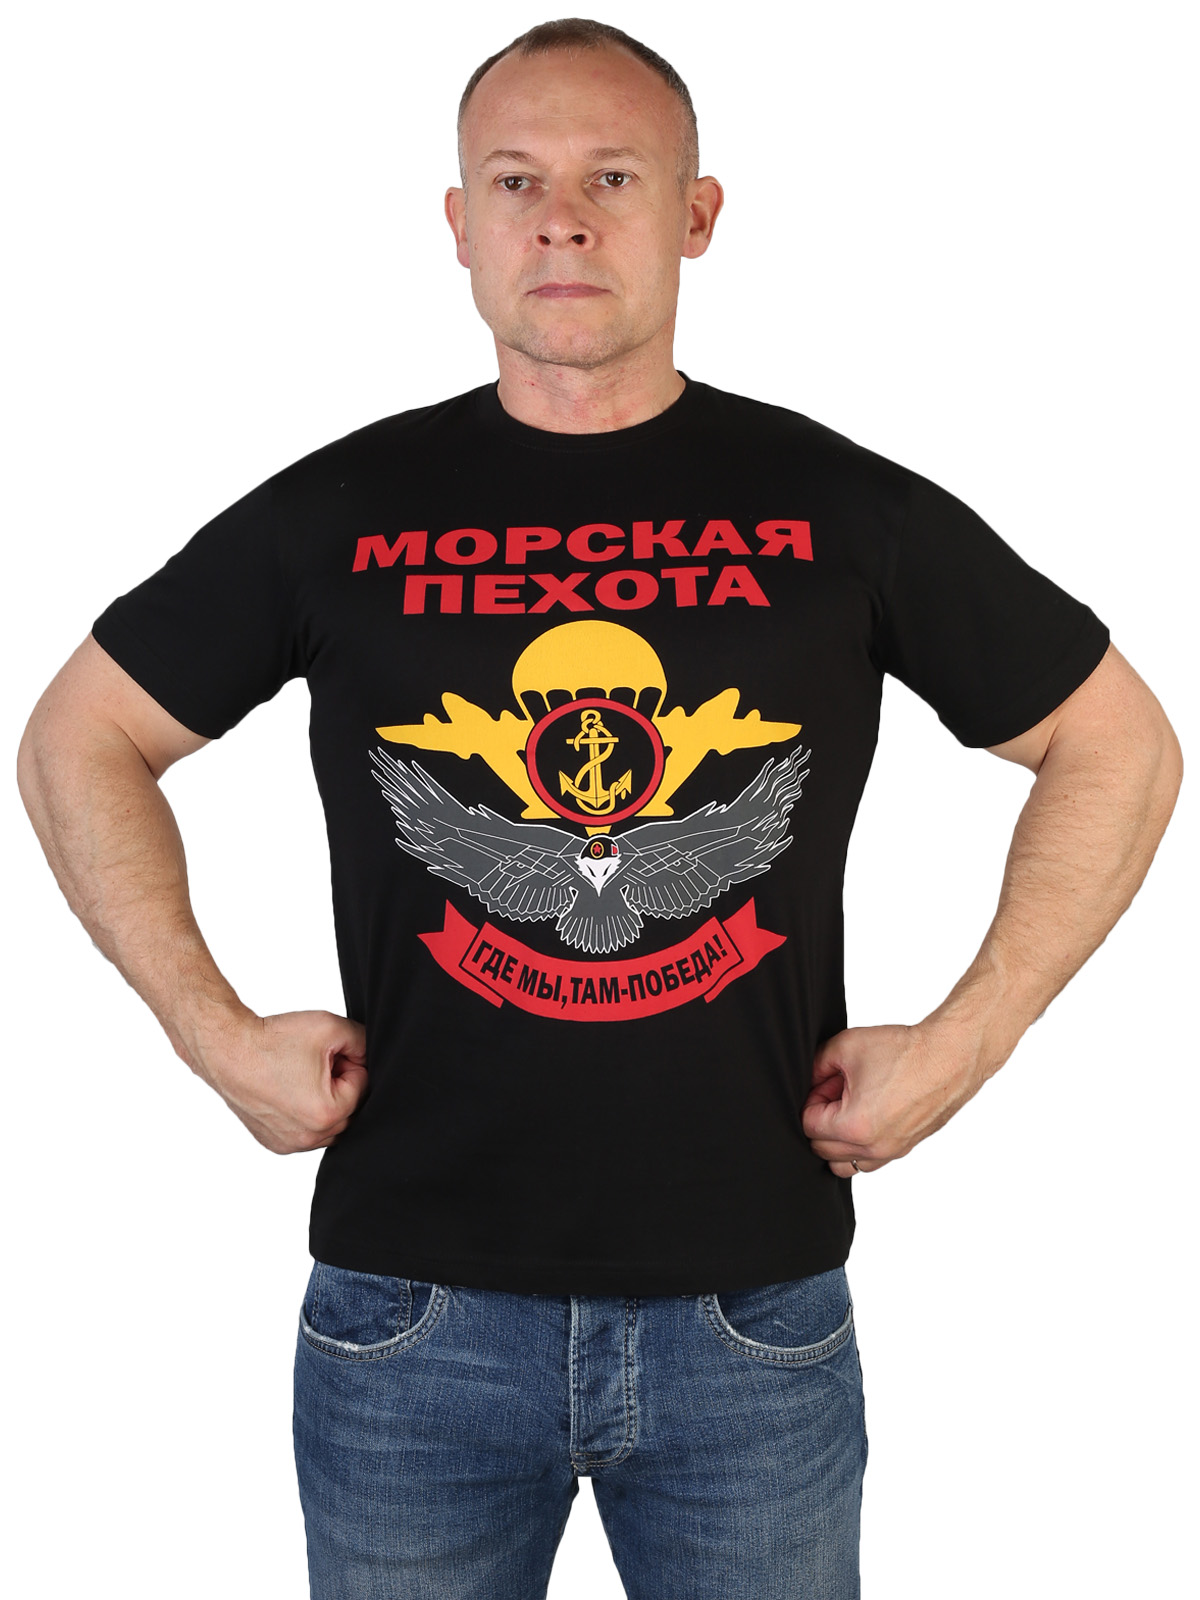 Мужская футболка Морской пехоты с девизом 